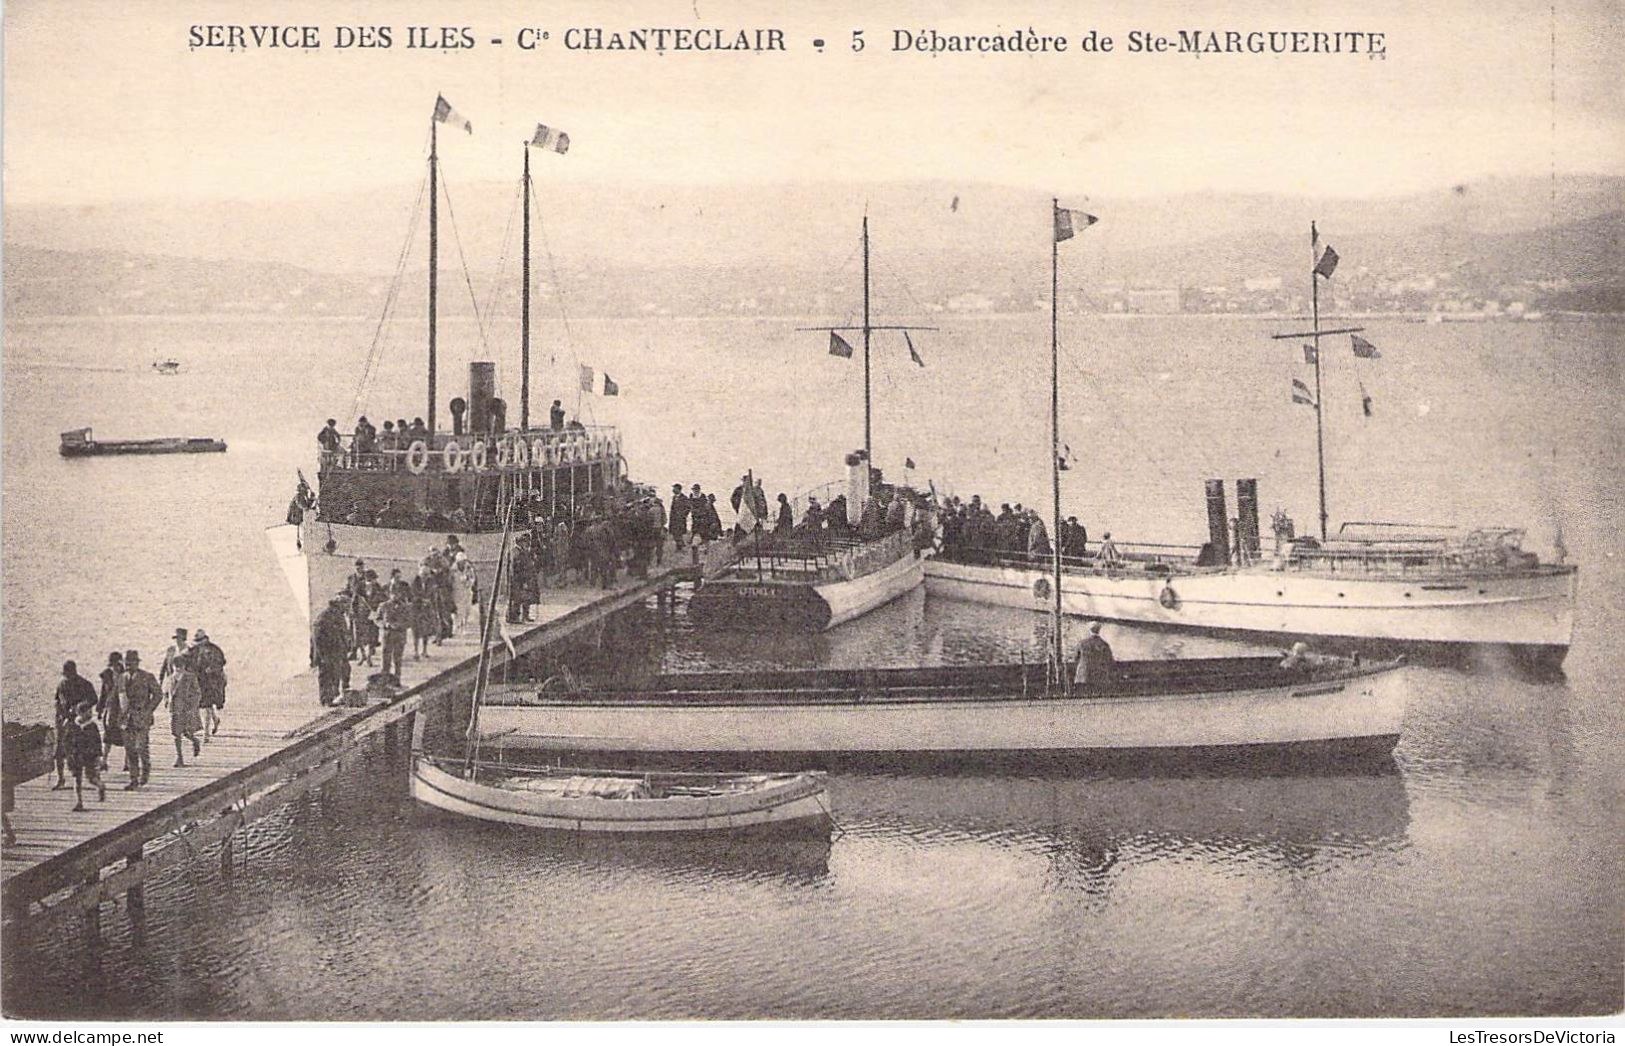 TRANSPORTS -  AEROGLISSEURS - Service Des Iles - Cie Chanteclair - Débarcadère Ste Marguerite - Carte Postale Ancienne - Aerodeslizadores